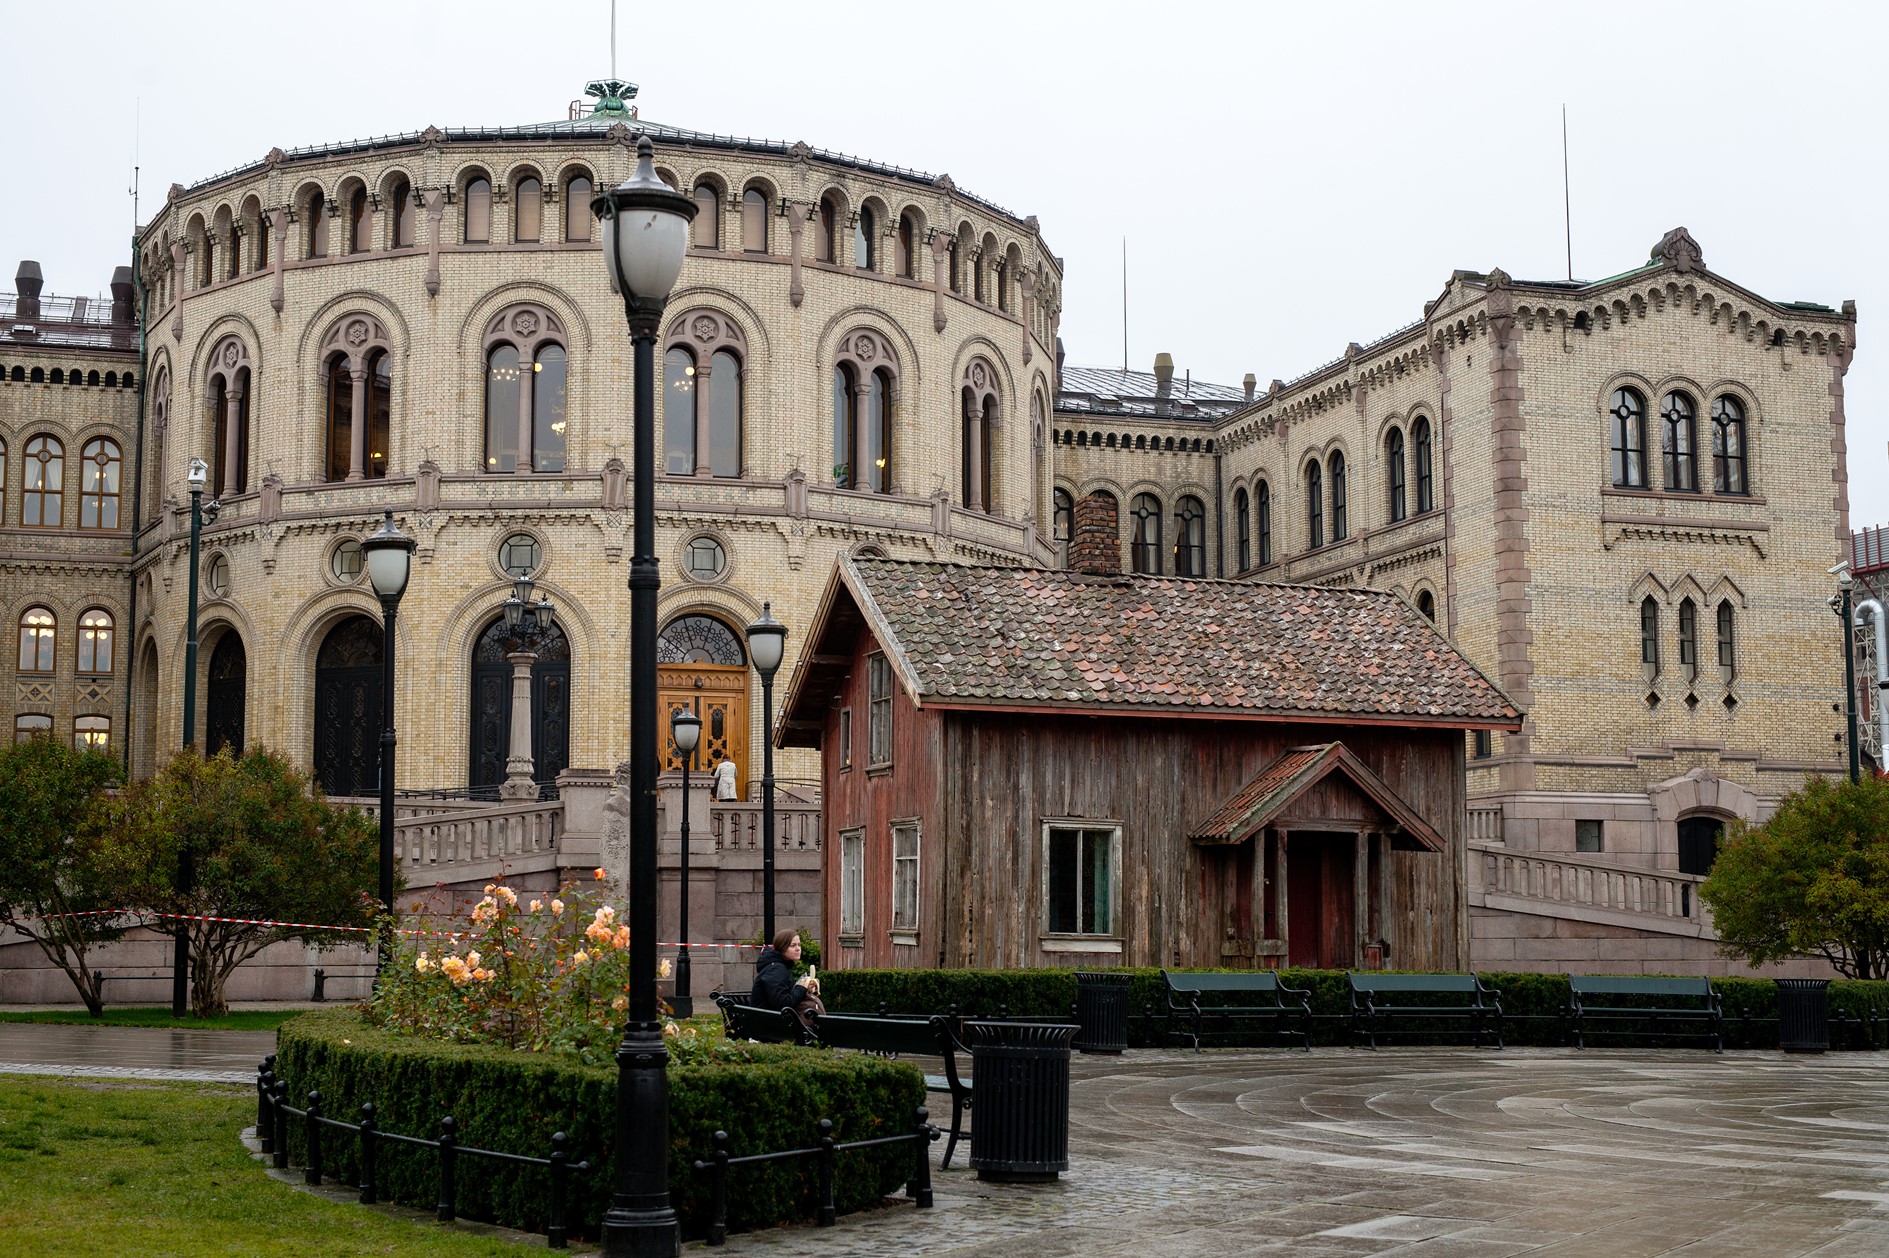 Foto av Stortinget og Eidsvolls plass med et gammelt, slitt hus foran.